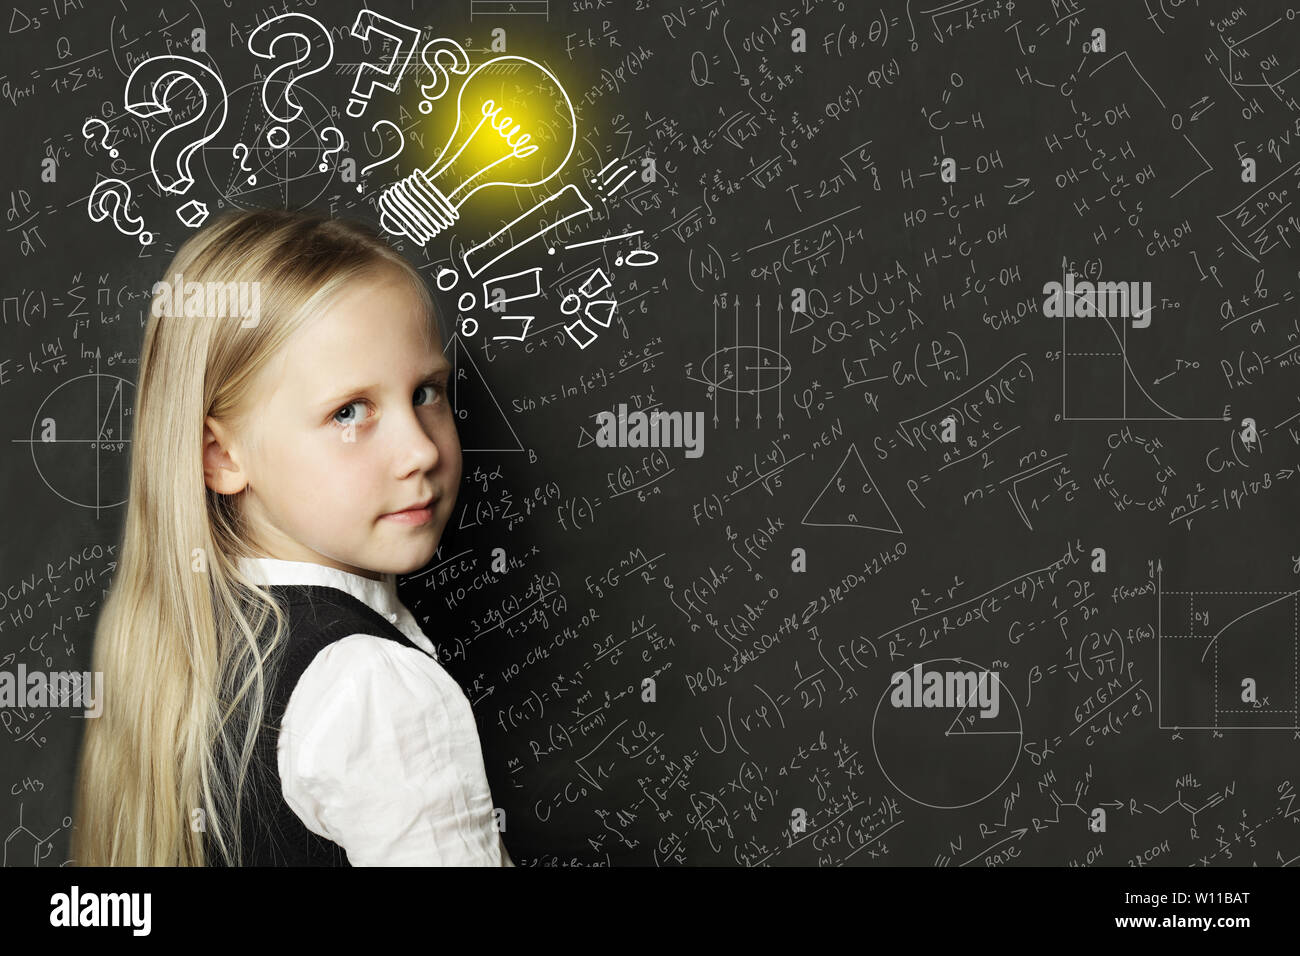 Idee! Schüler Mädchen mit Glühbirne auf der Tafel Stockfoto